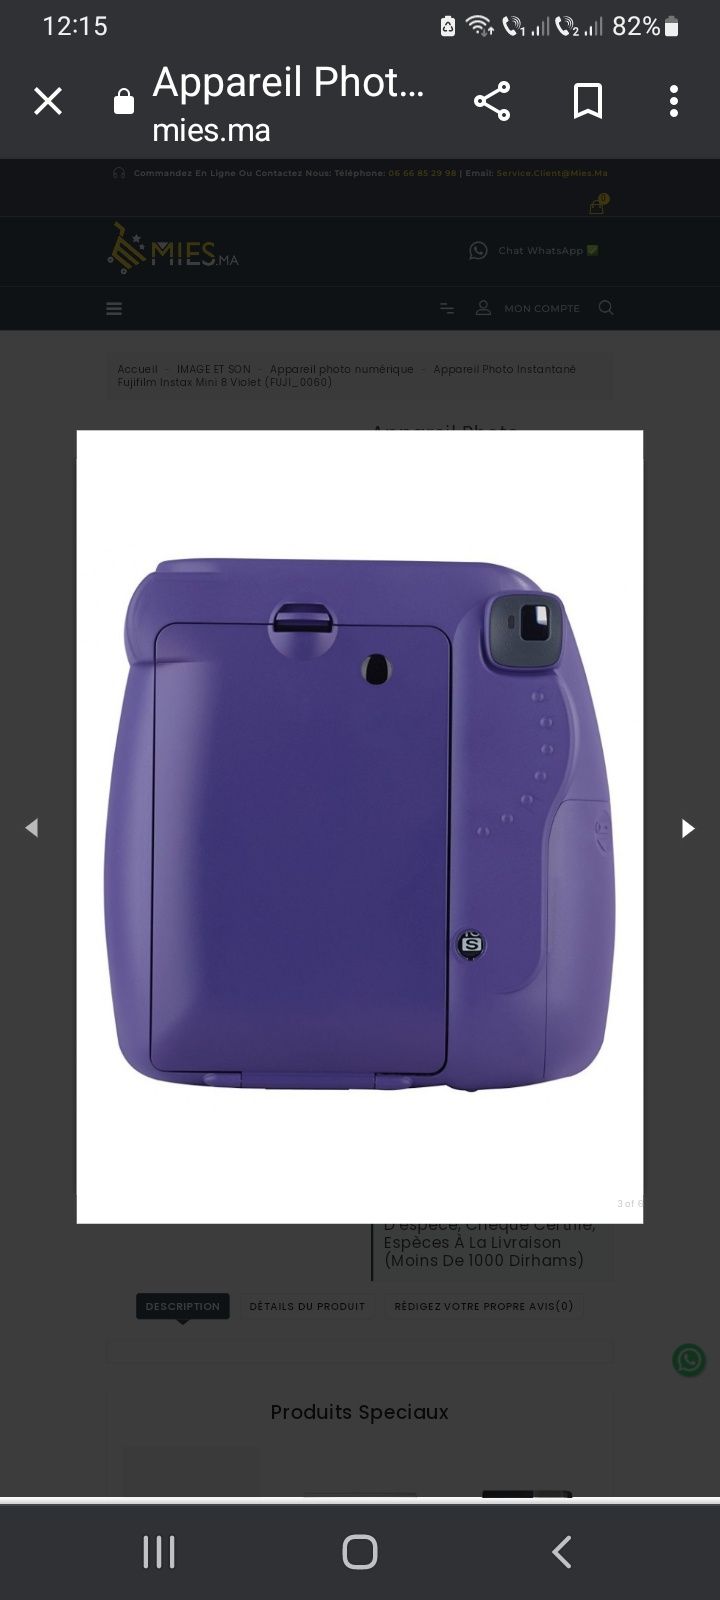 Cameră Fujifilm Instax mini 8, violet